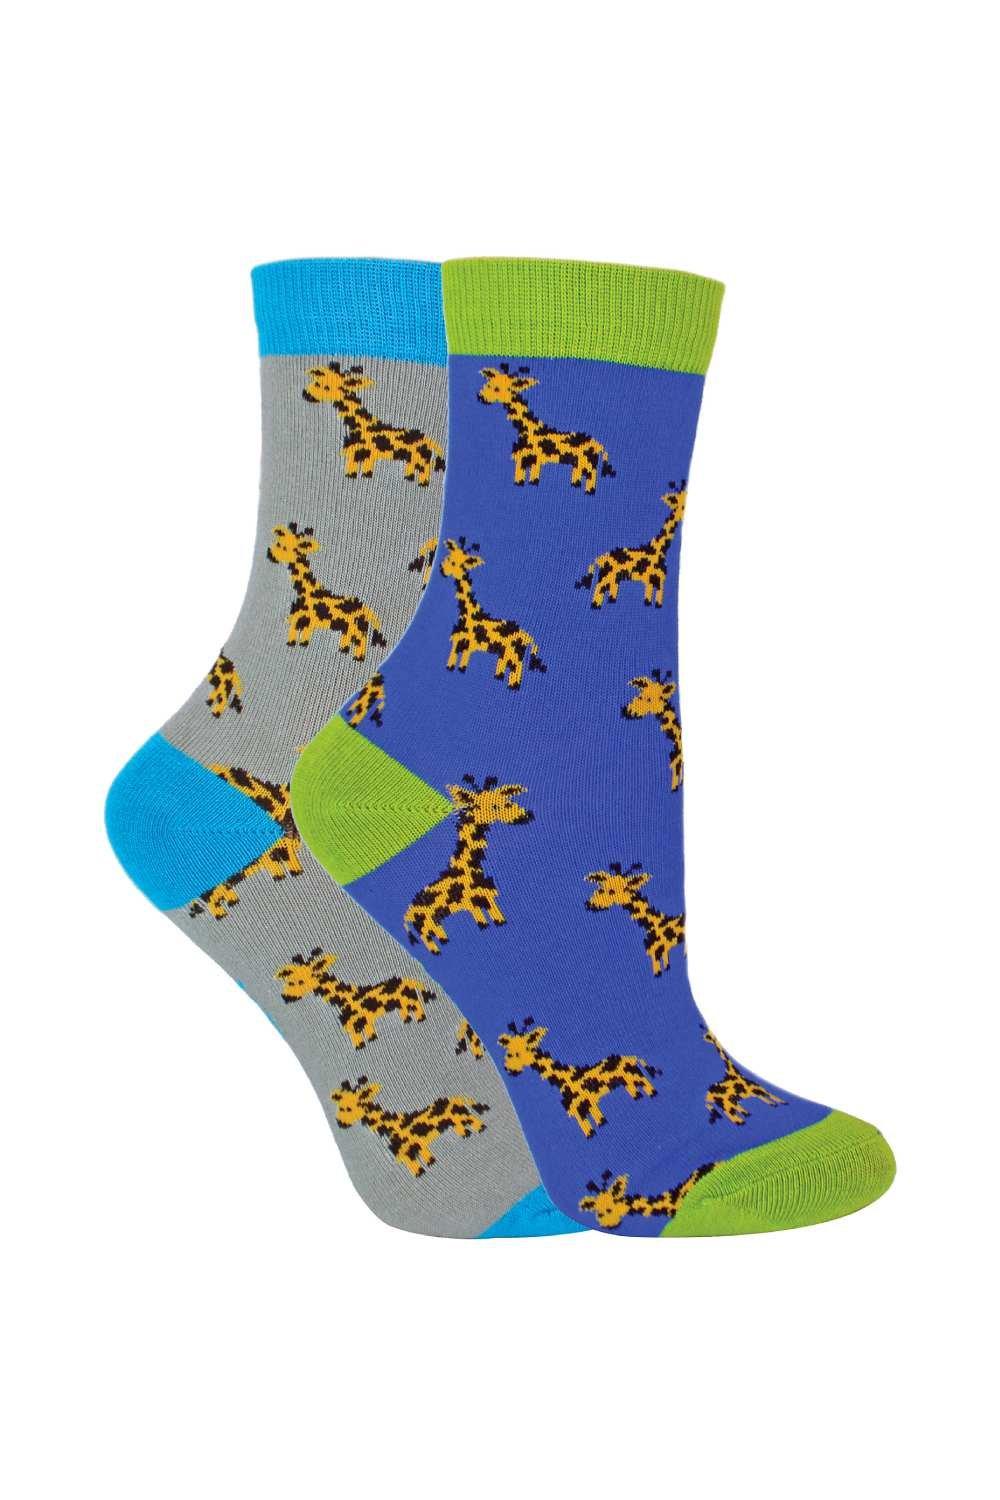 2 Pairs Bamboo Socks - Patterned Novelty Design Socks